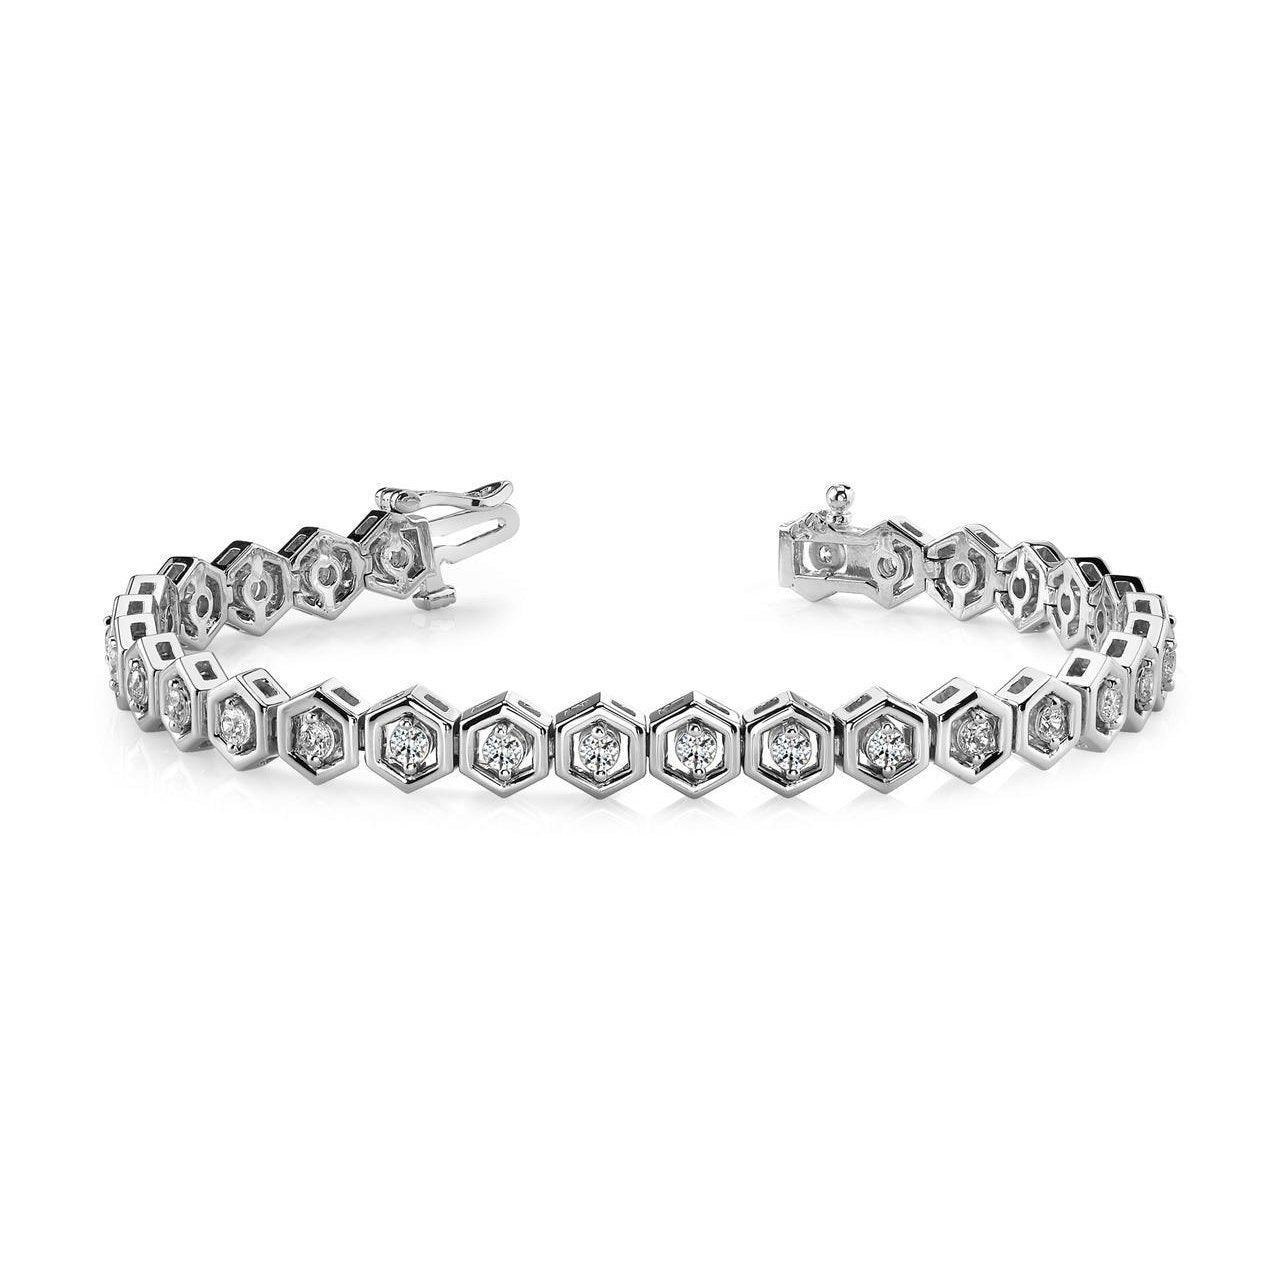 Wunderschönes, zweipoliges, rundes Diamant-Armband mit 5 Karat Hexagon-Gliedern - harrychadent.ch